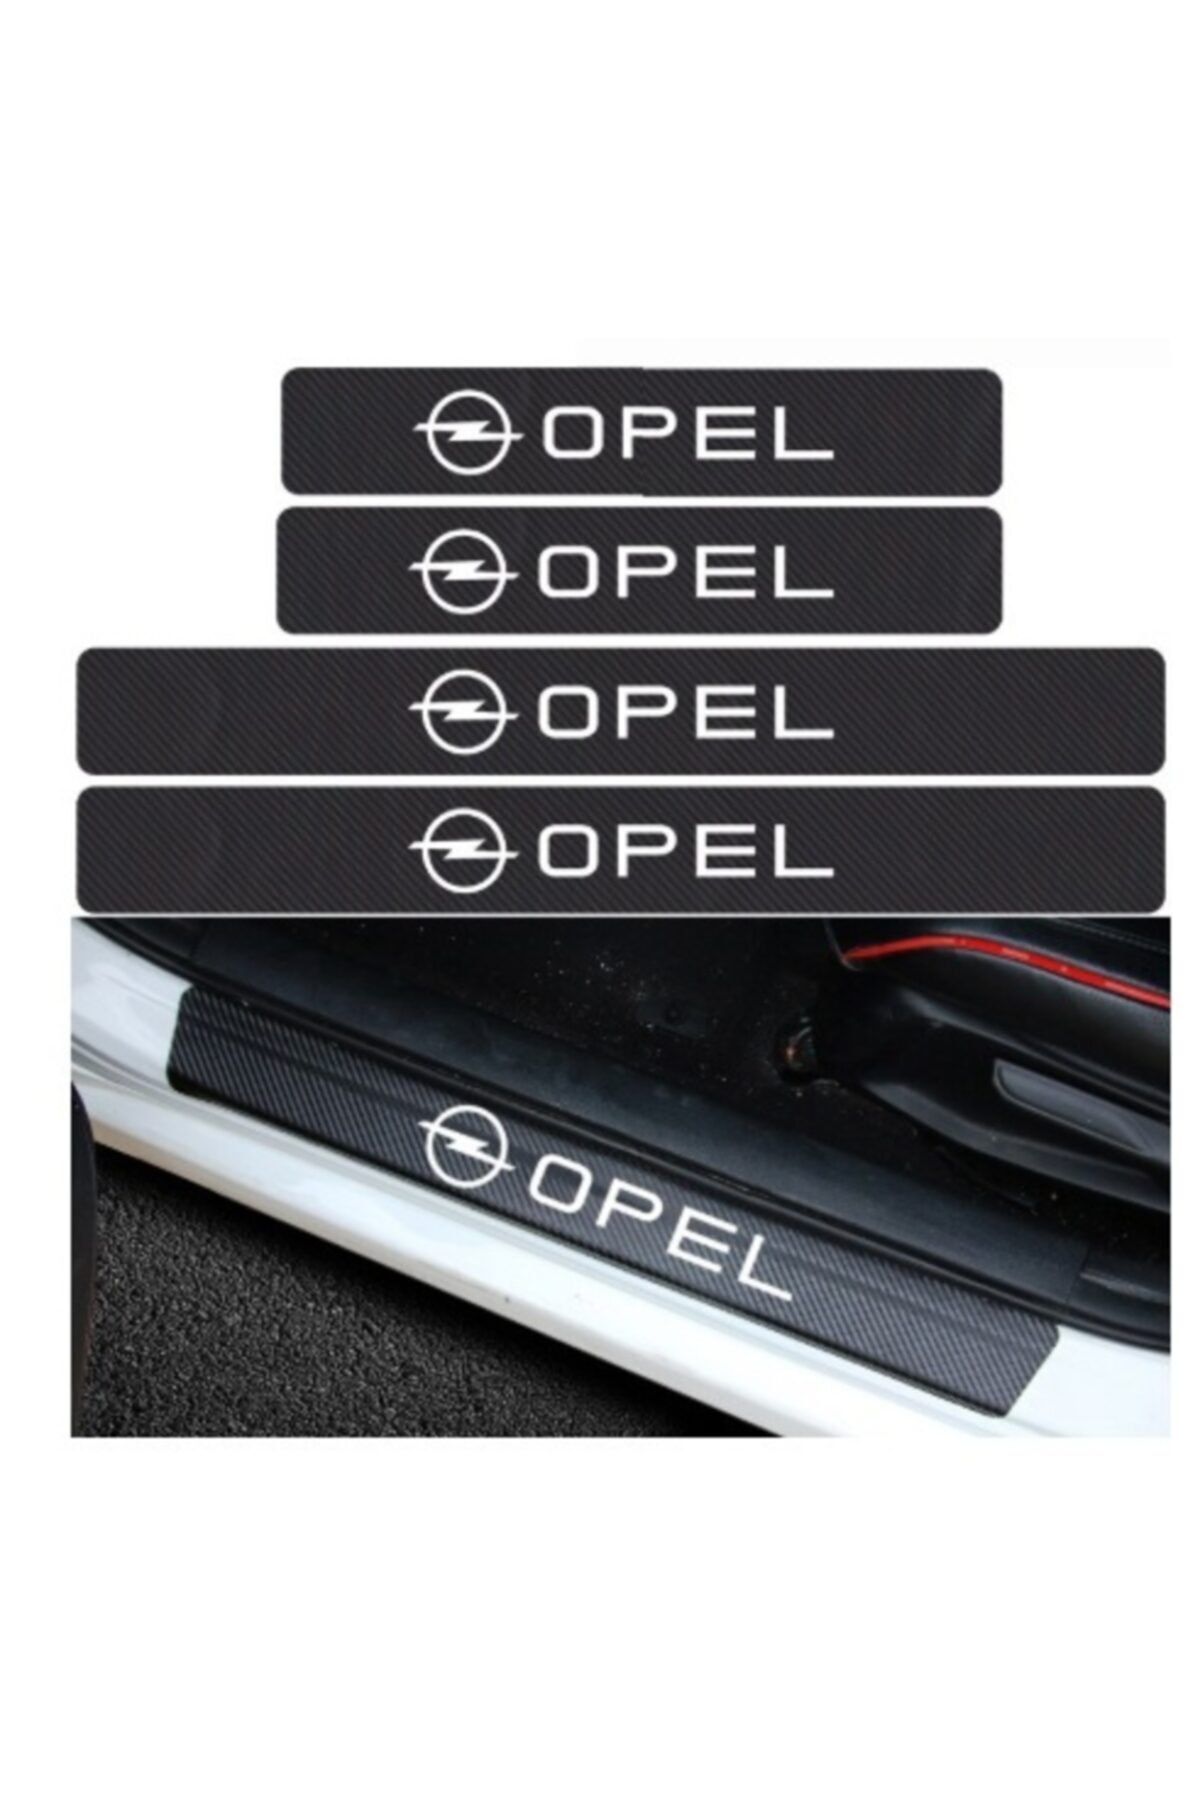 TSC Opel Carbon Fiber Kapı Eşiği Yazısı Sticker 4 Adet